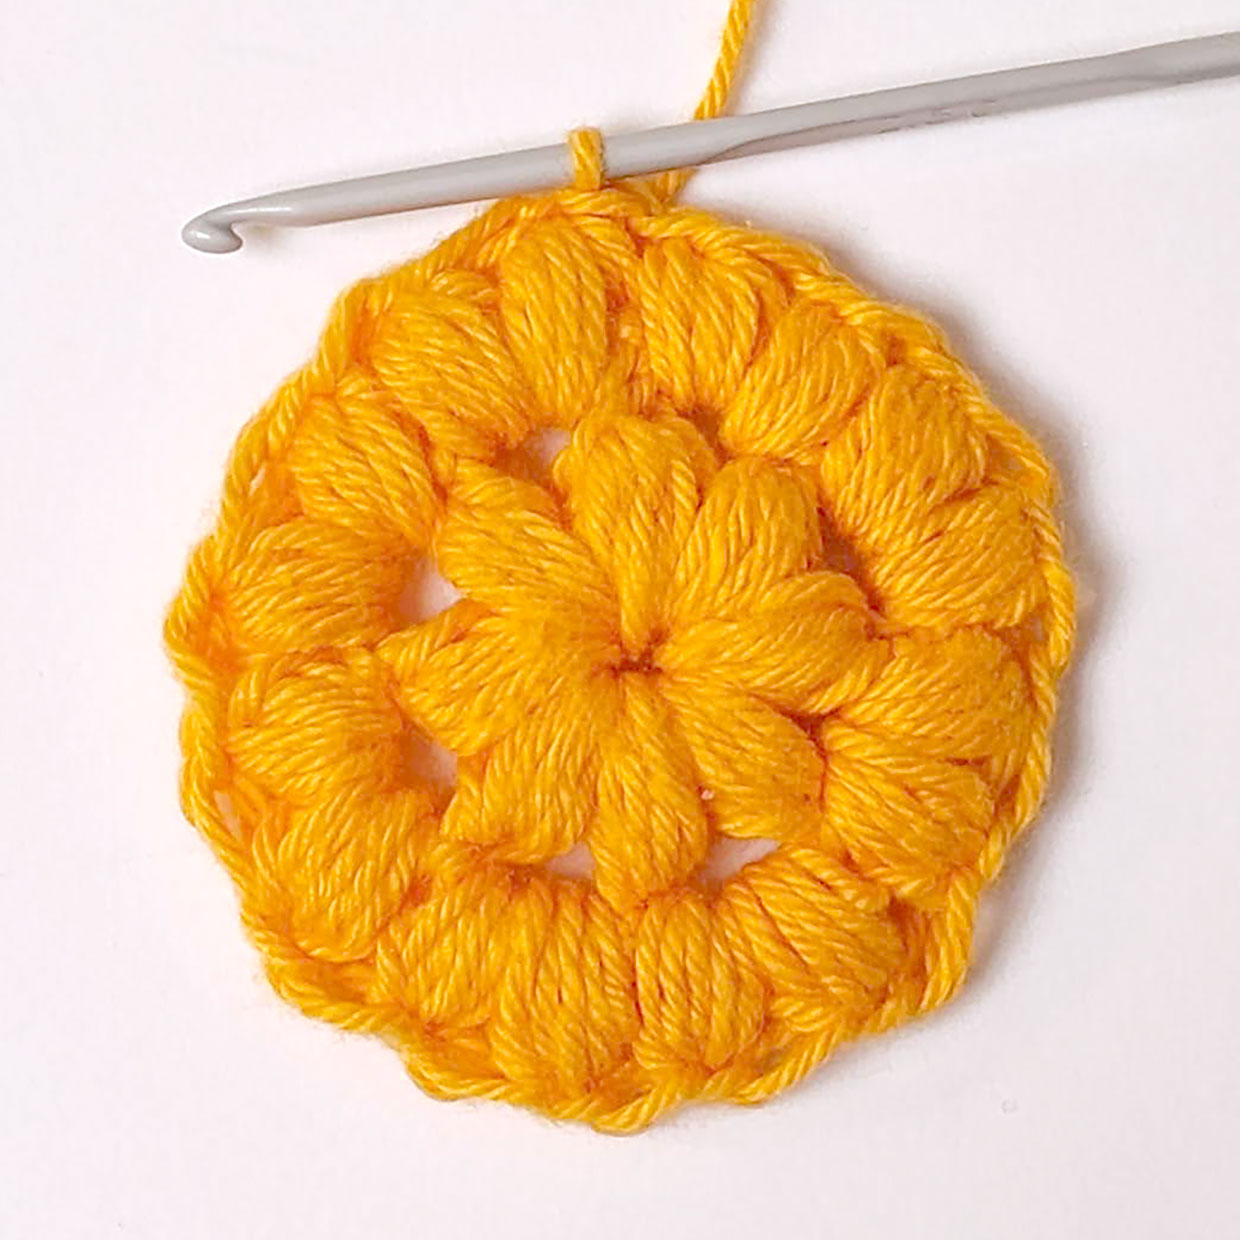 Crochet-scrubbie-pattern-step-03